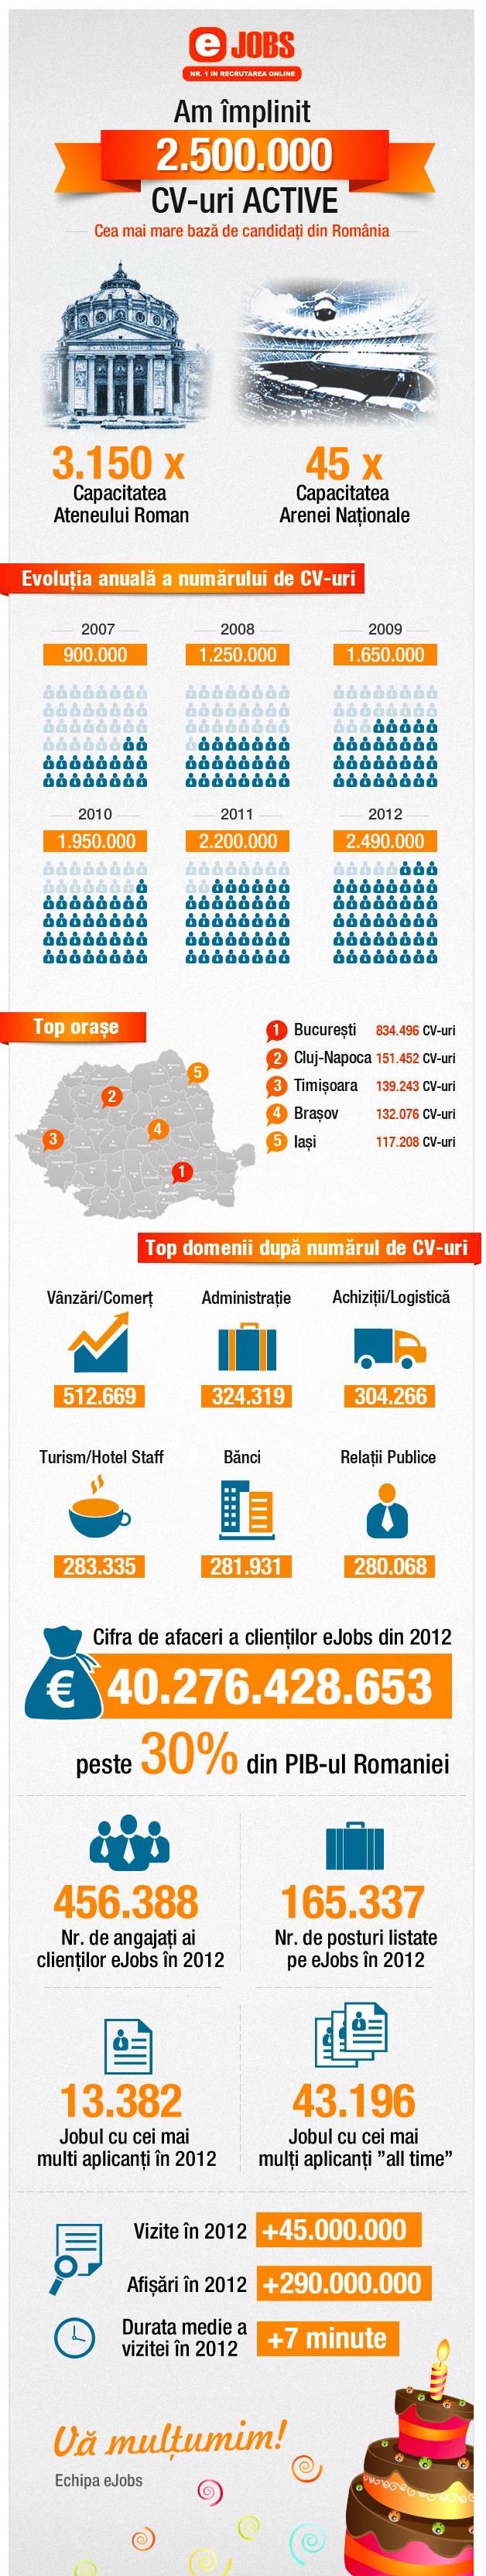 eJobs - Portalul de joburi Nr. 1 din Romania